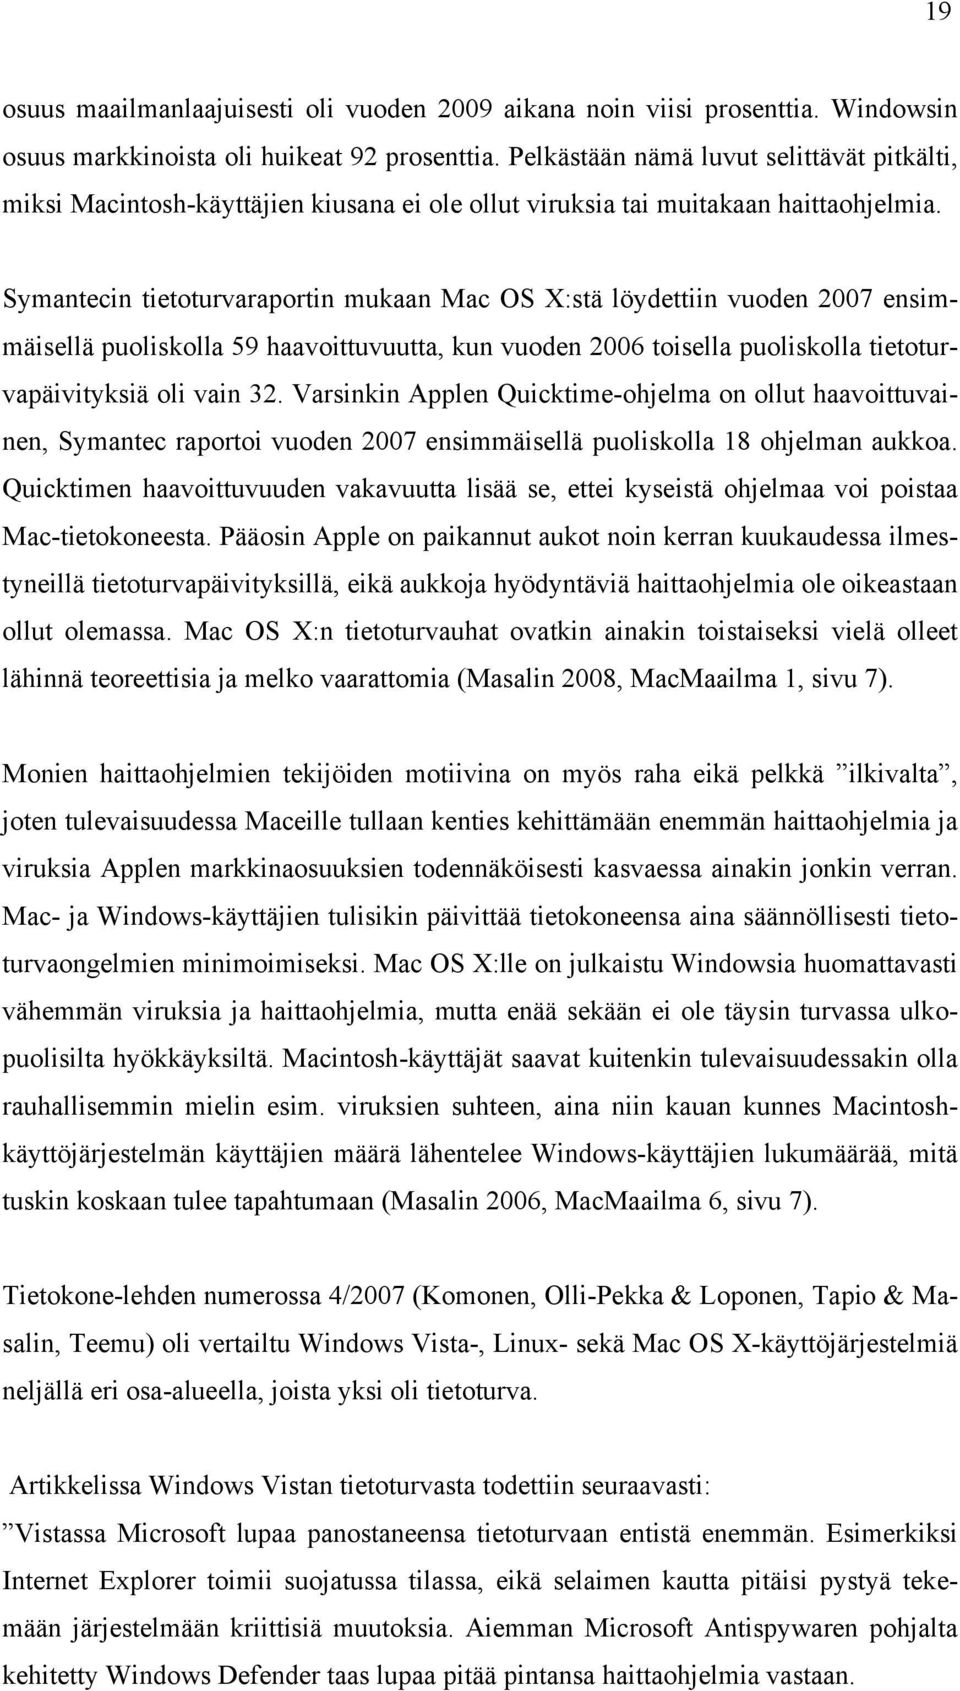 Symantecin tietoturvaraportin mukaan Mac OS X:stä löydettiin vuoden 2007 ensimmäisellä puoliskolla 59 haavoittuvuutta, kun vuoden 2006 toisella puoliskolla tietoturvapäivityksiä oli vain 32.